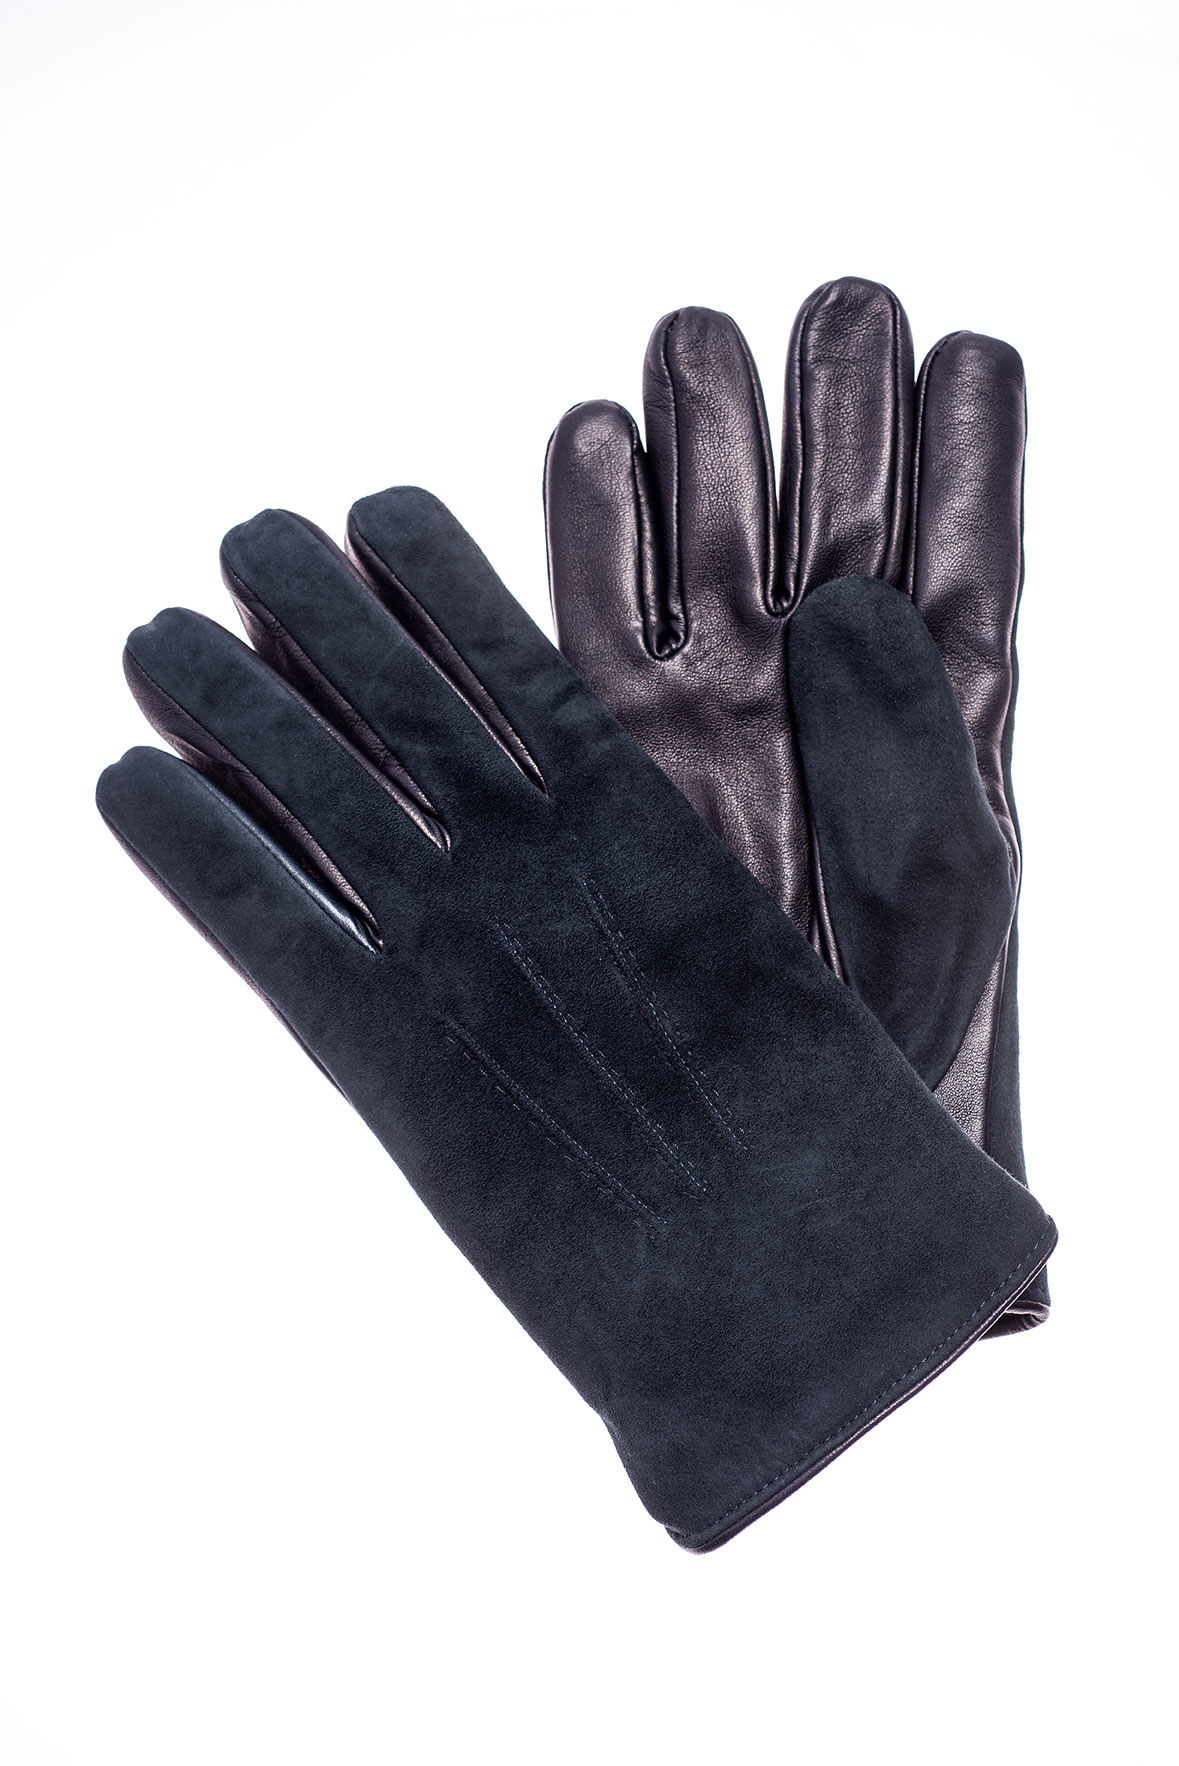 Mănuși din piele de ovină, căptușite M207 Albastru 2020-2021